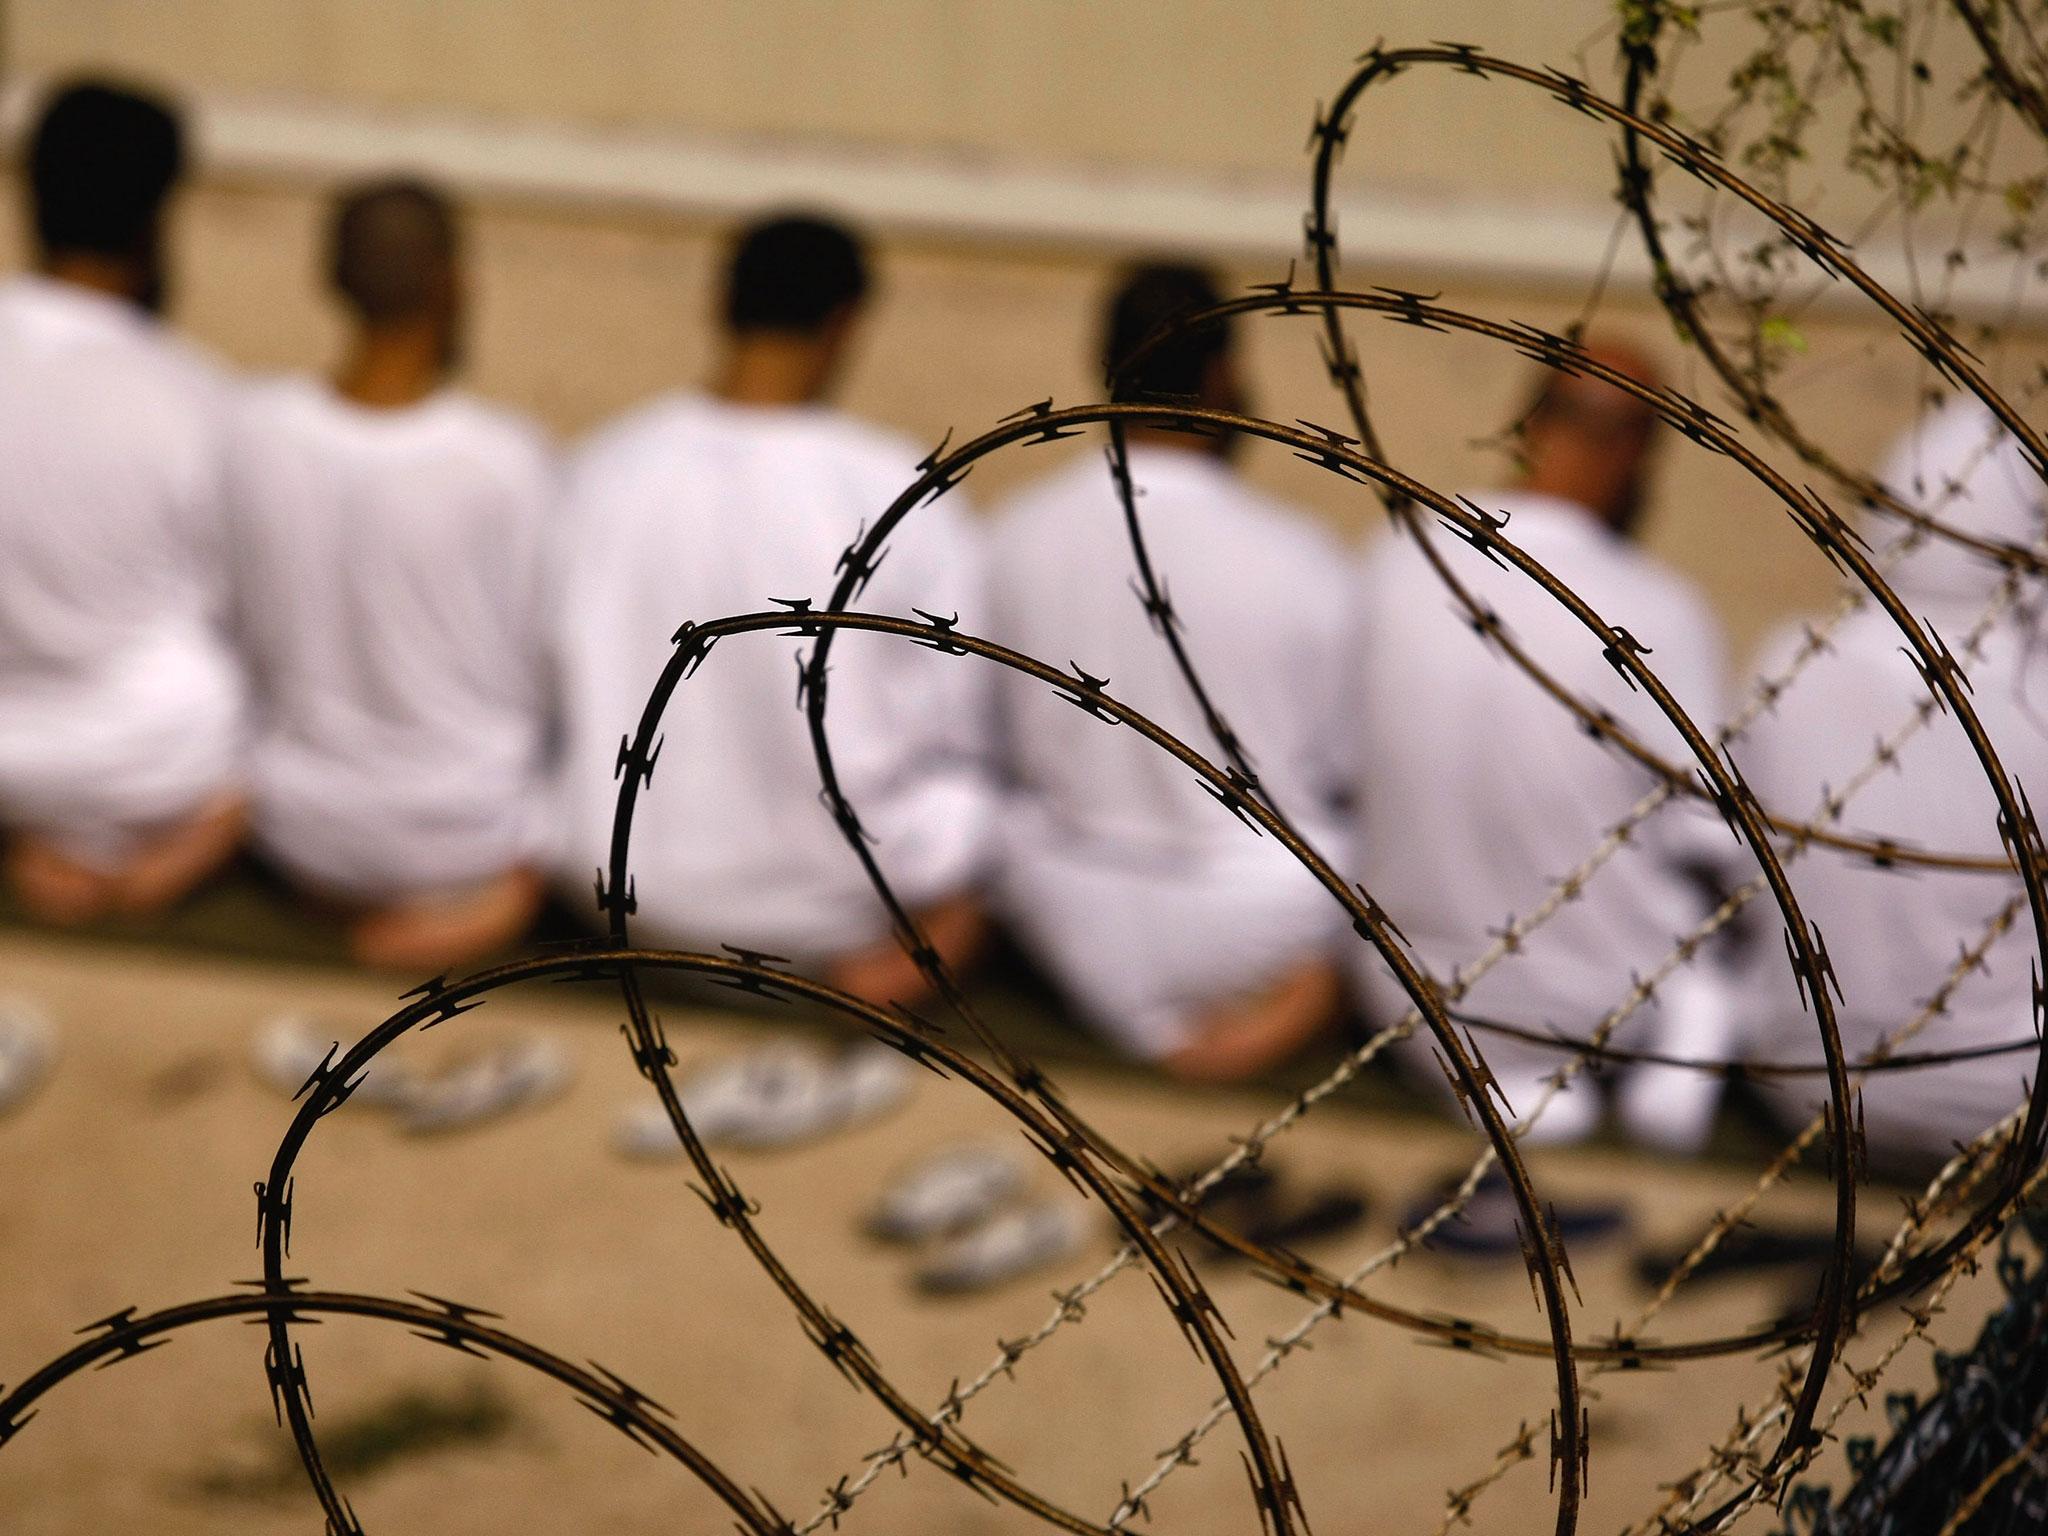 80 prisoners are still at Guantanamo Bay